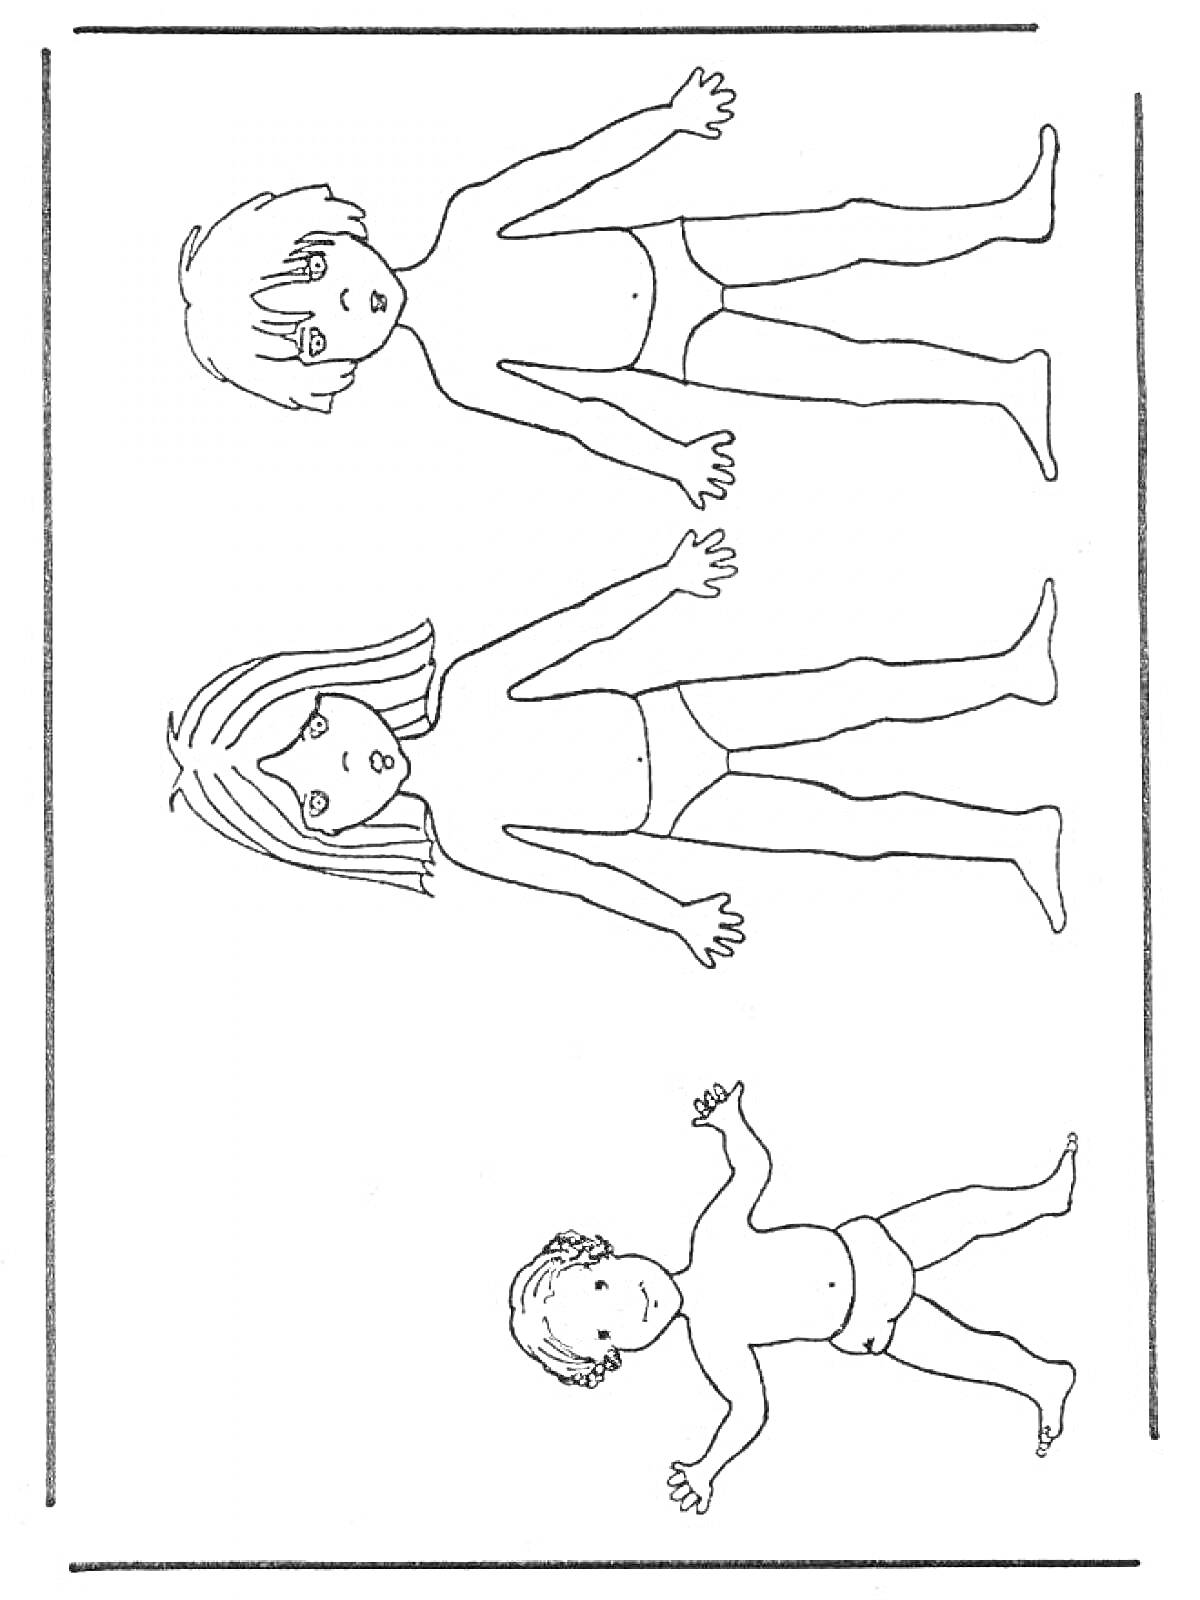 Раскраска Раскраска с изображением трех детей в анатомическом стиле